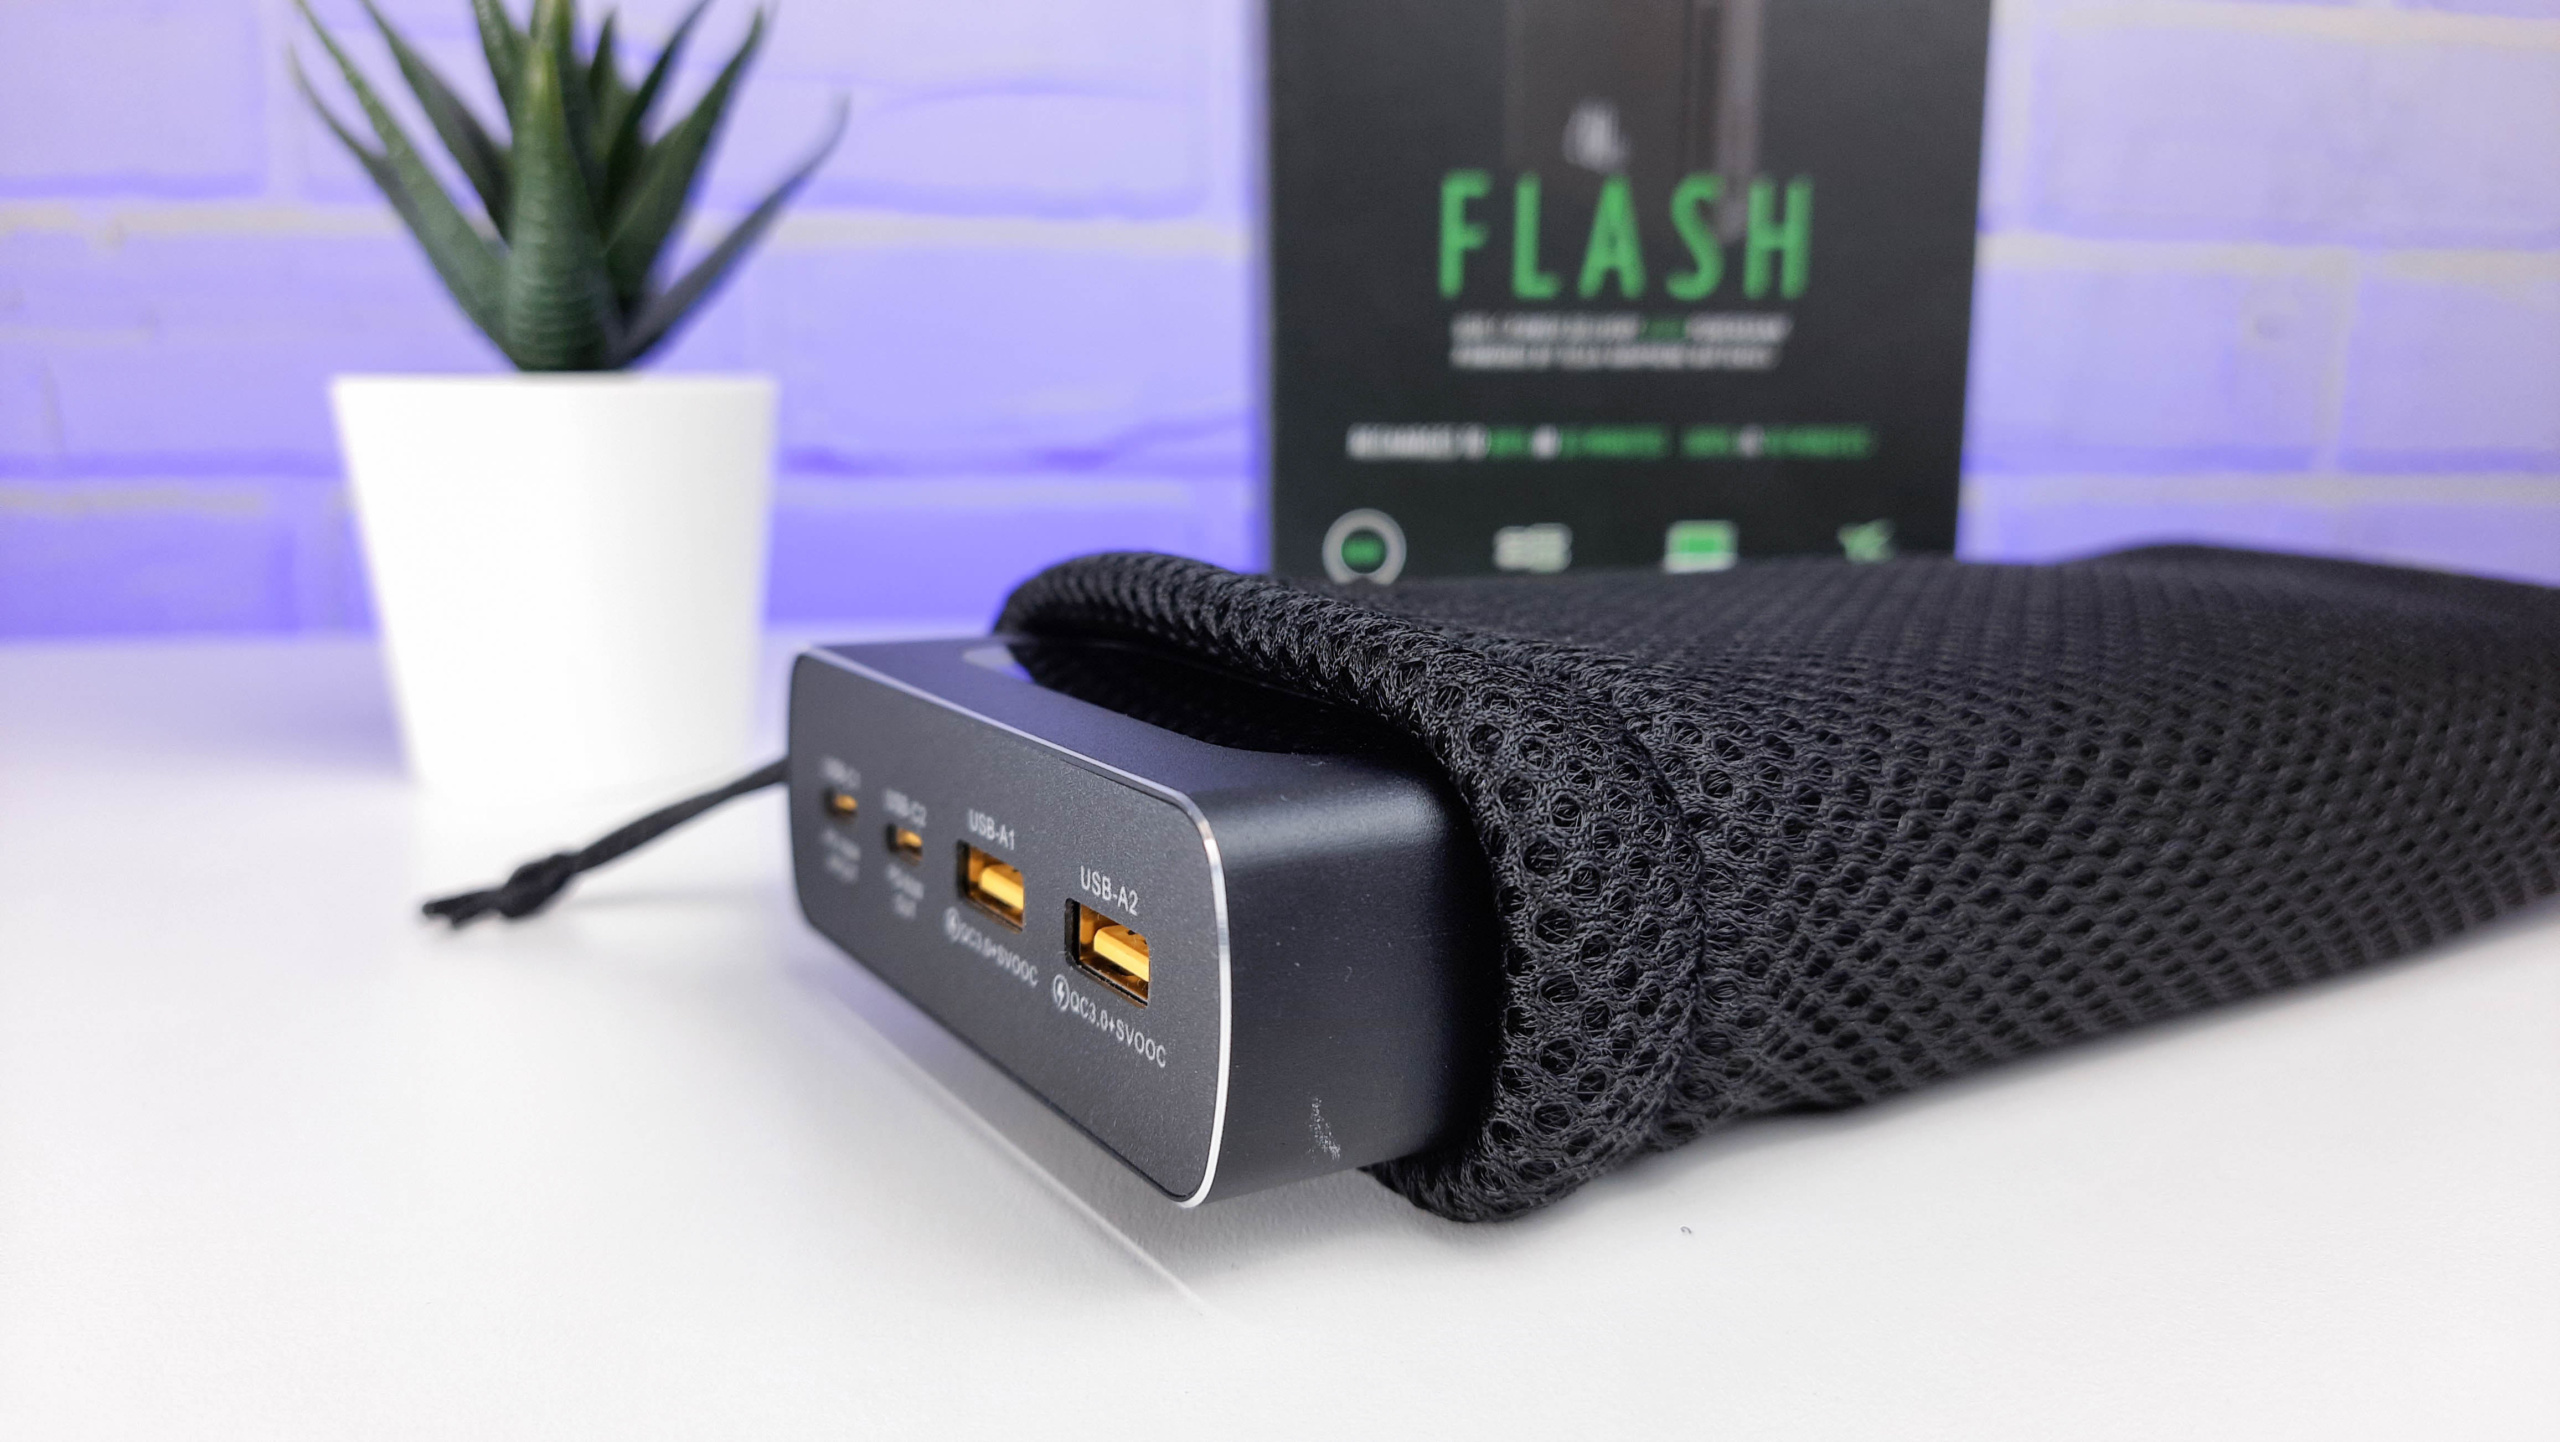 Обзор ZAMAX Flash Power Bank 200W: металлический павербанк для ноутбуков и портативных игровых консолей по цене $110